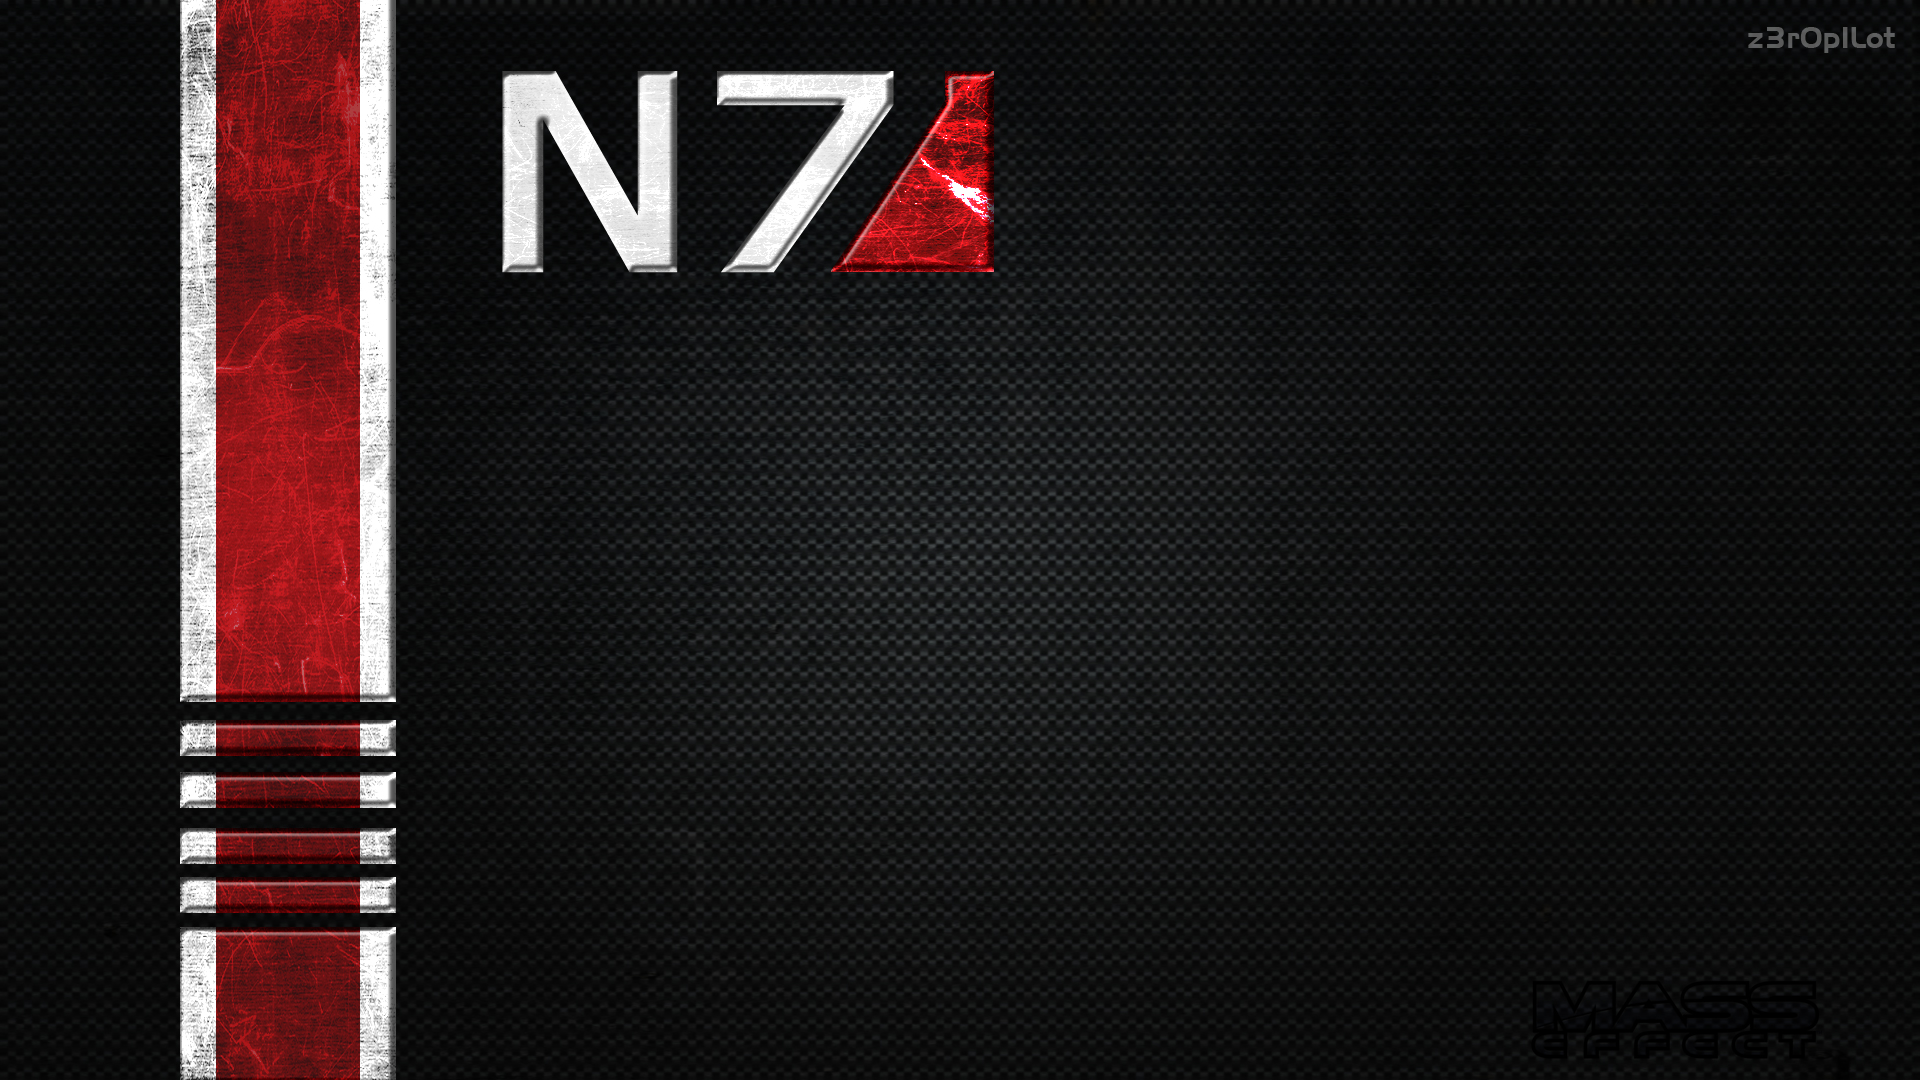 N7 Wallpaper Dark By Z3r0p1lot Fan Art Games Here Is A